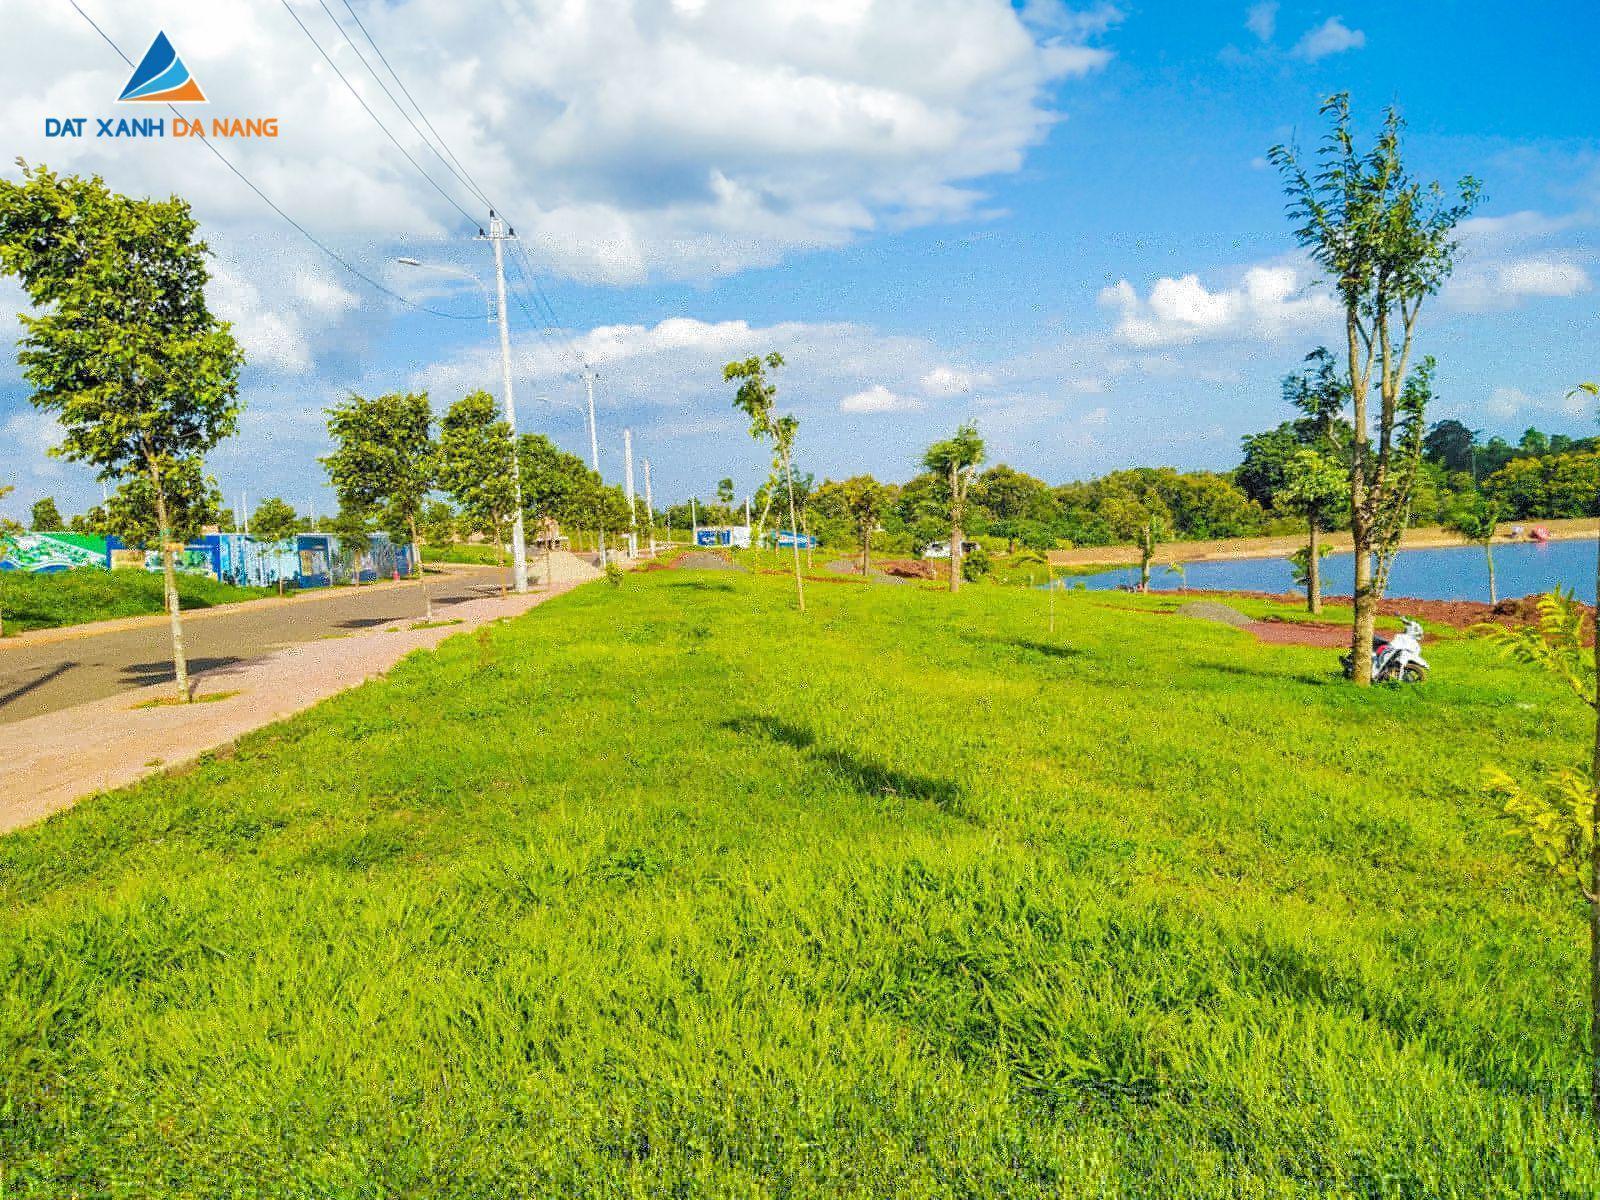 [GÓC CẬP NHẬT] DỰ ÁN BUÔN HỒ CENTRAL PARK THÁNG 07/2019 - Viet Nam Smart City